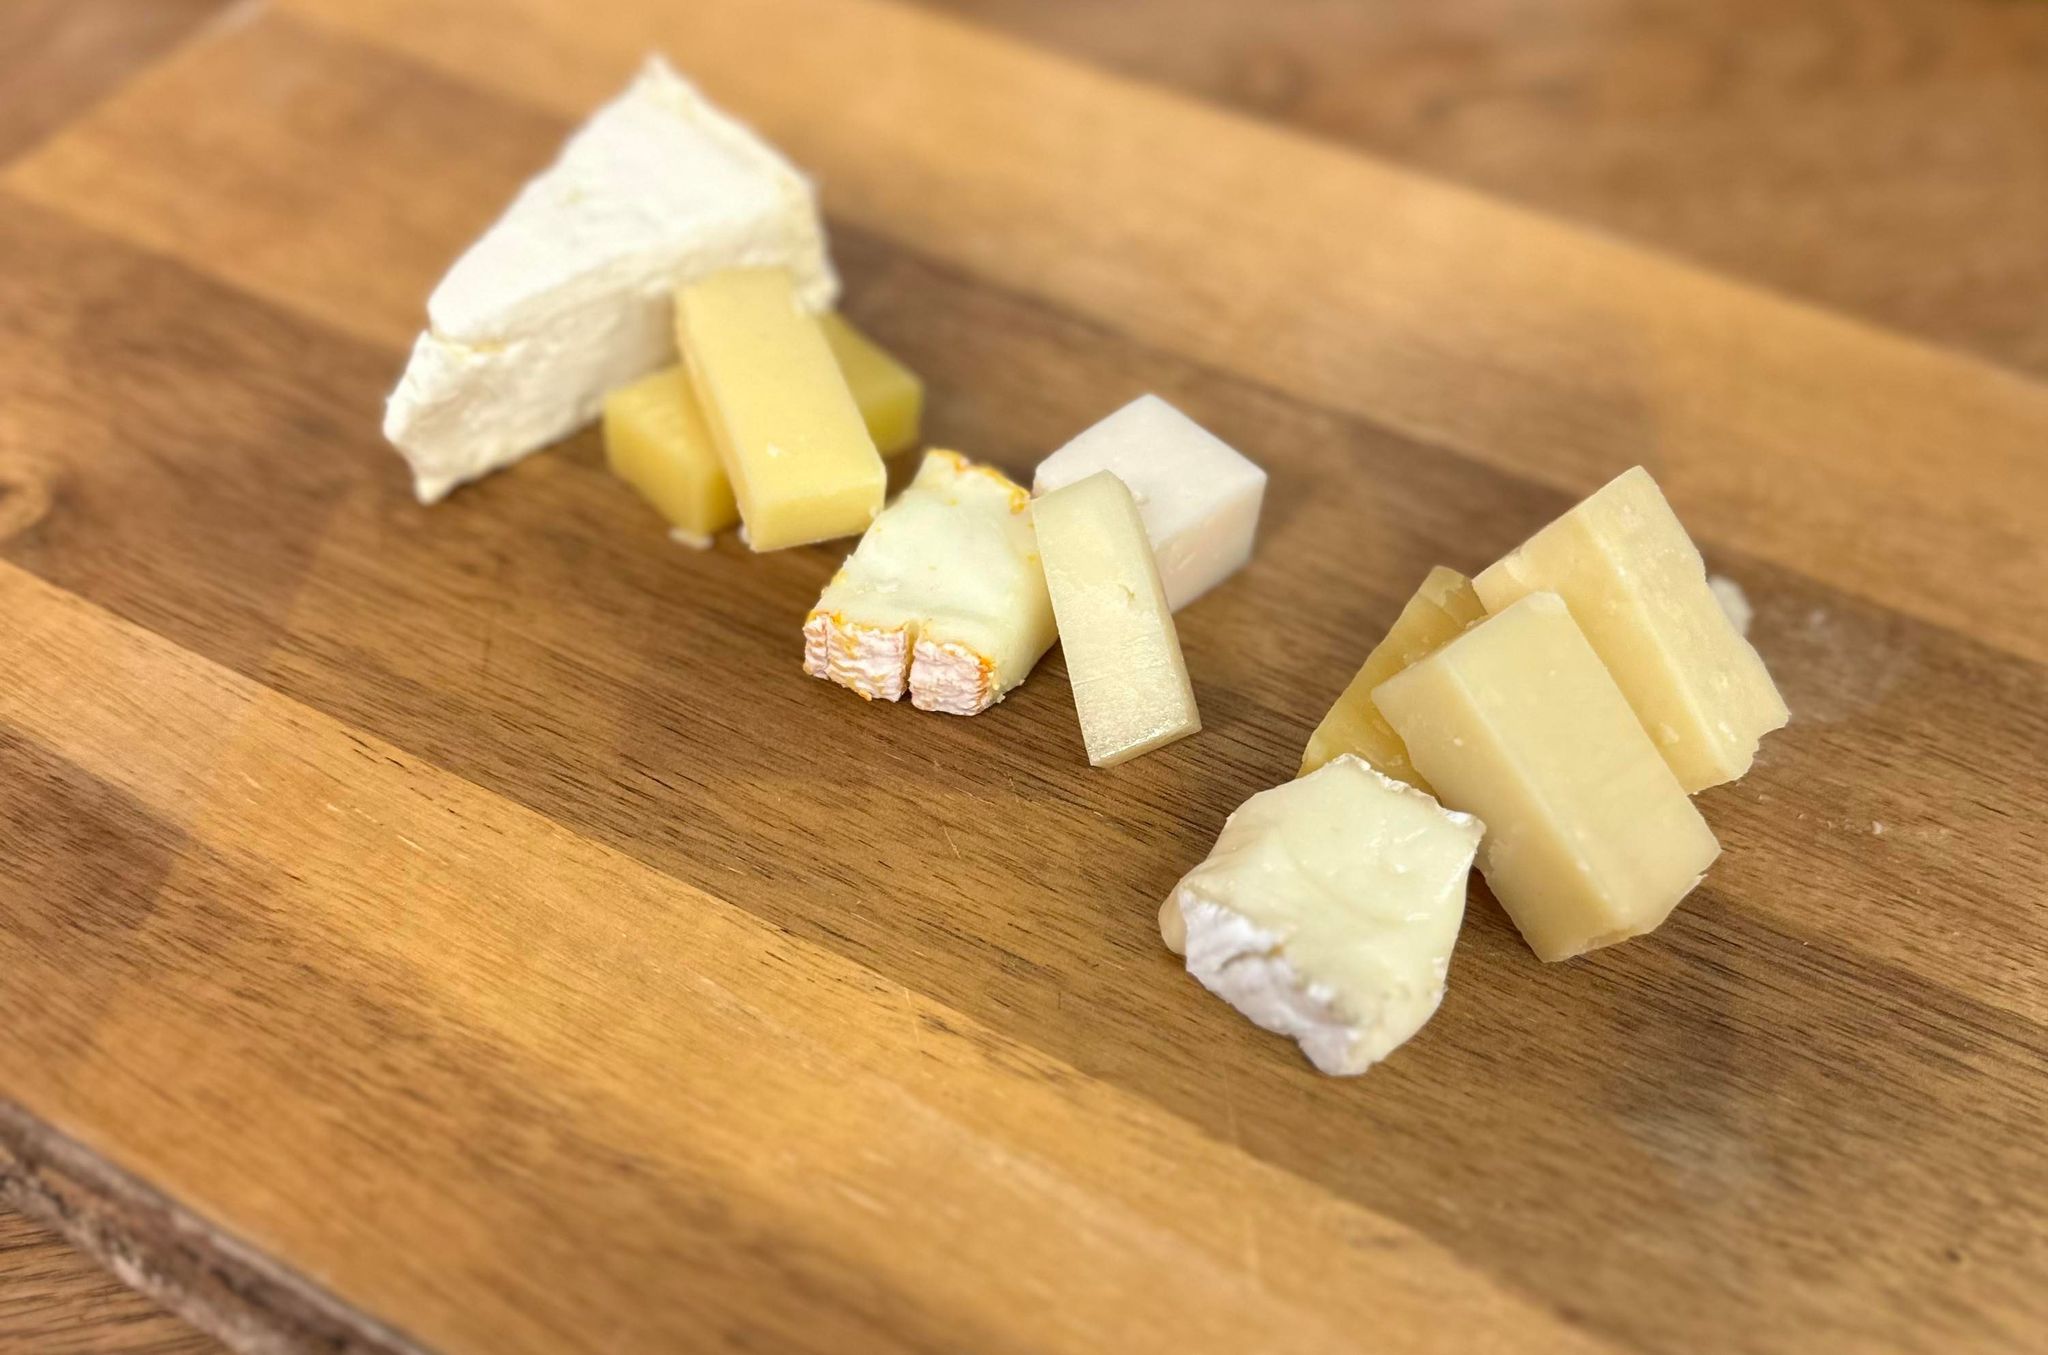 En ostbricka med diverse ostar.